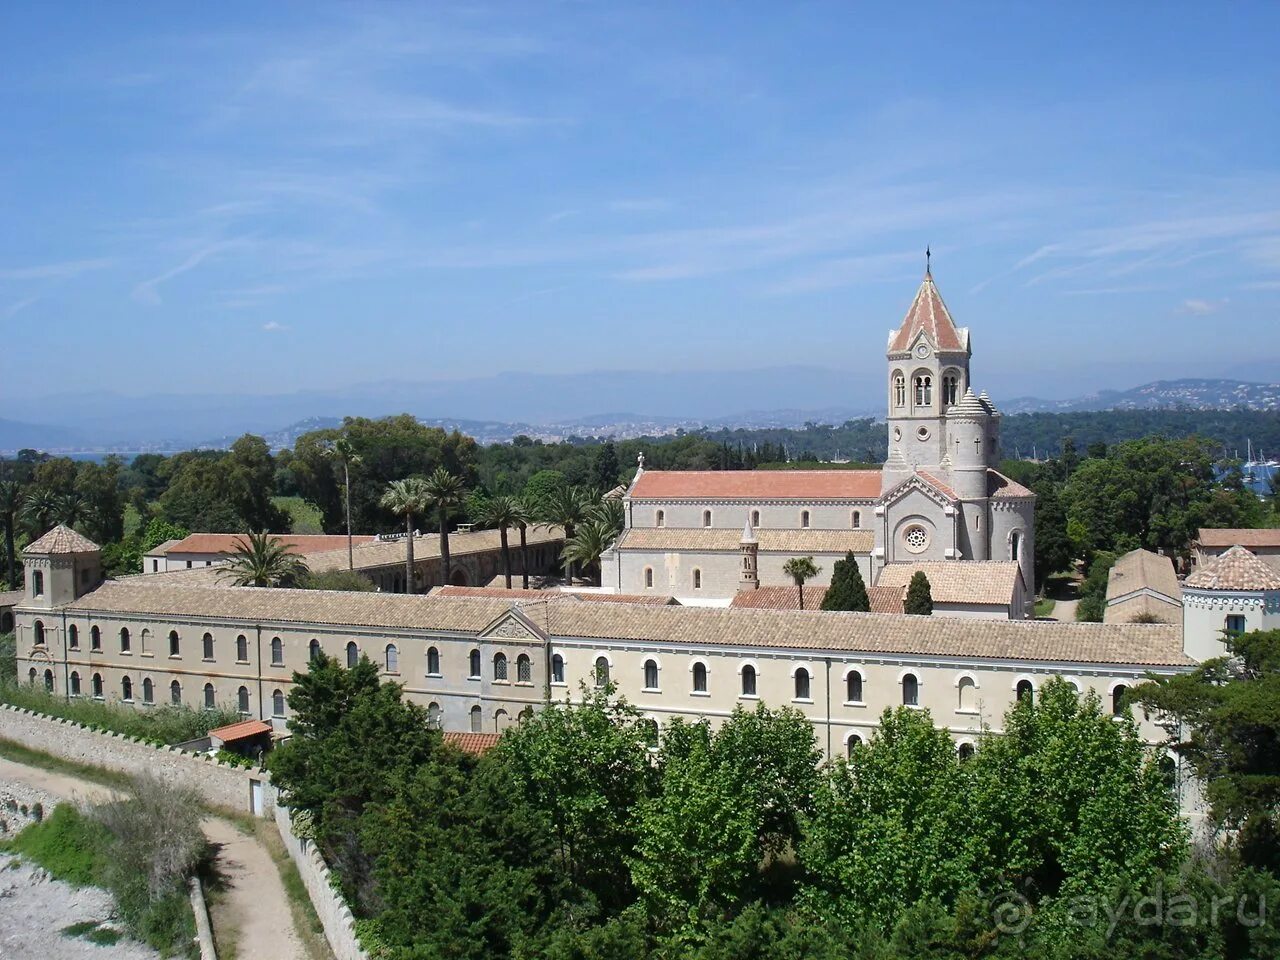 Самый крупный монастырь в европе. Леринское аббатство. Леринское аббатство Канны. Леринский монастырь во Франции. Леринское аббатство средневековый монастырь.